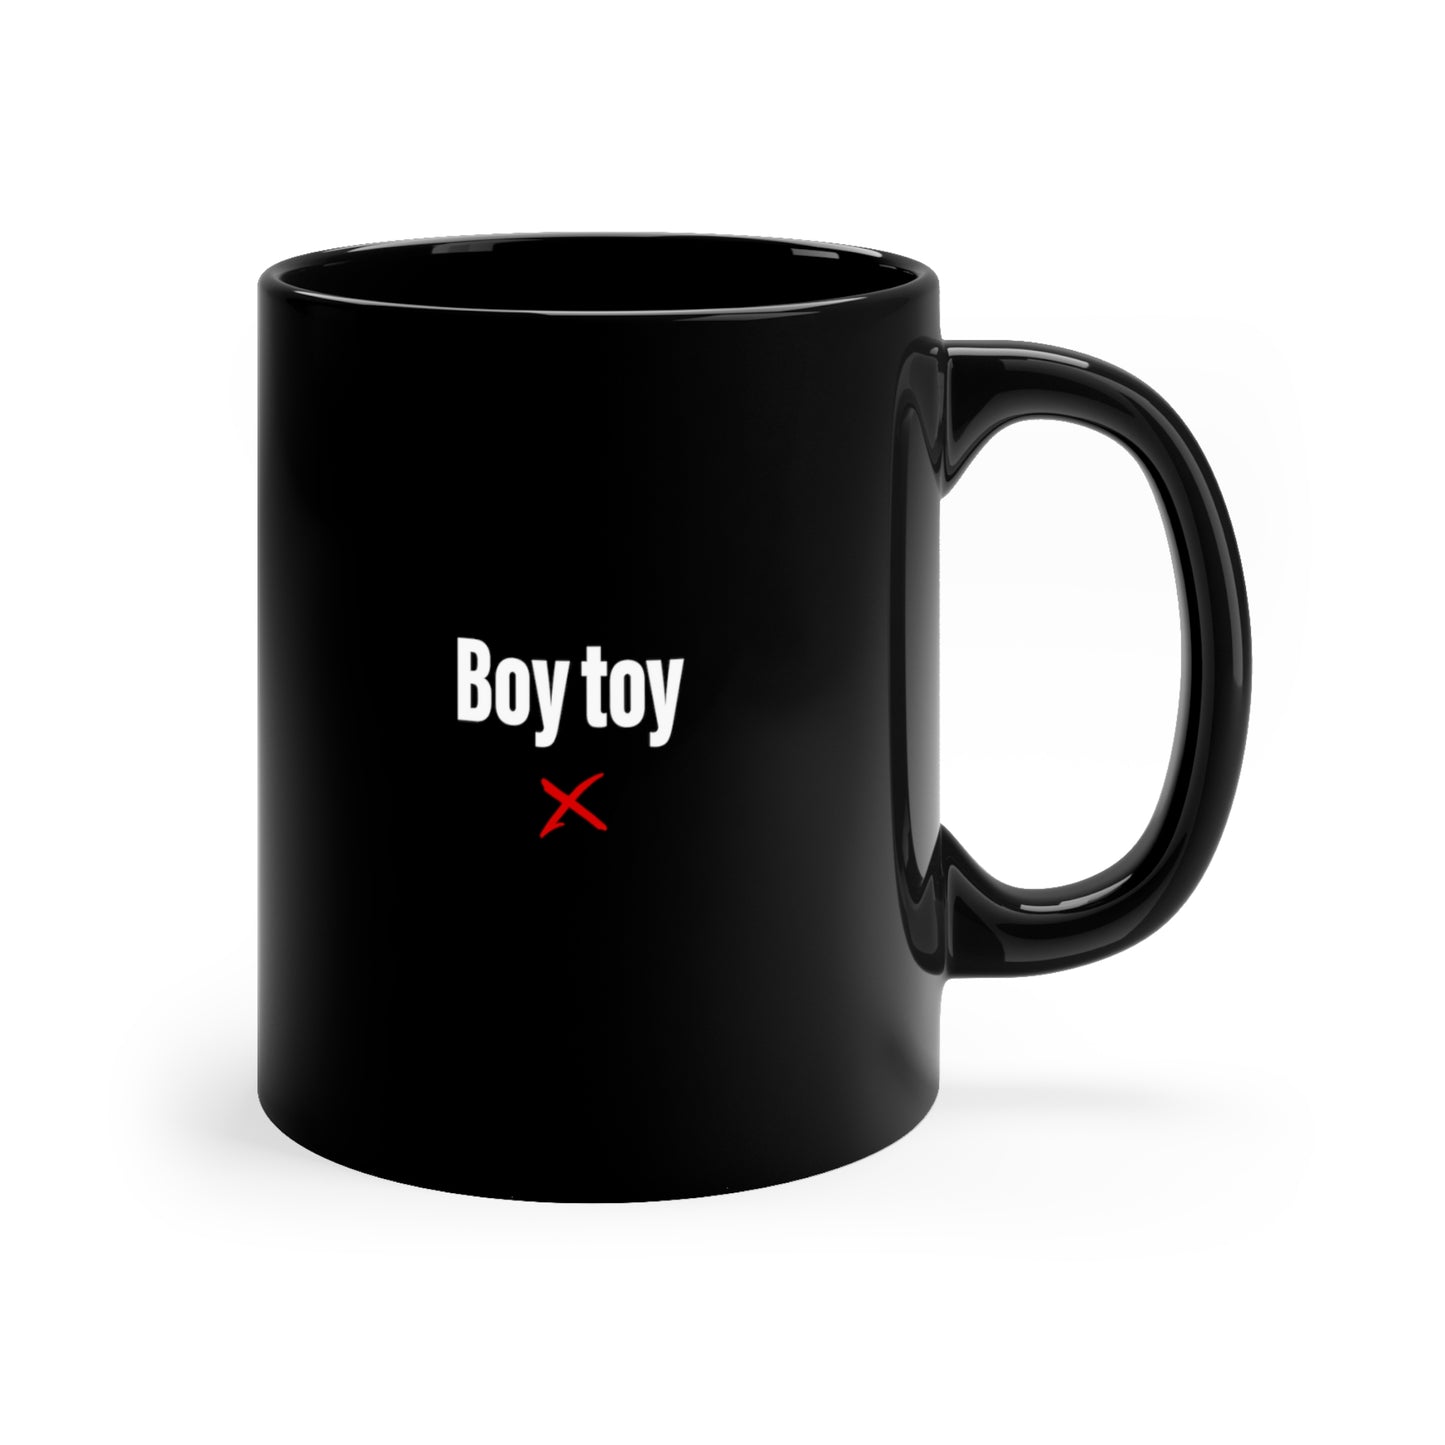 Boy toy - Mug